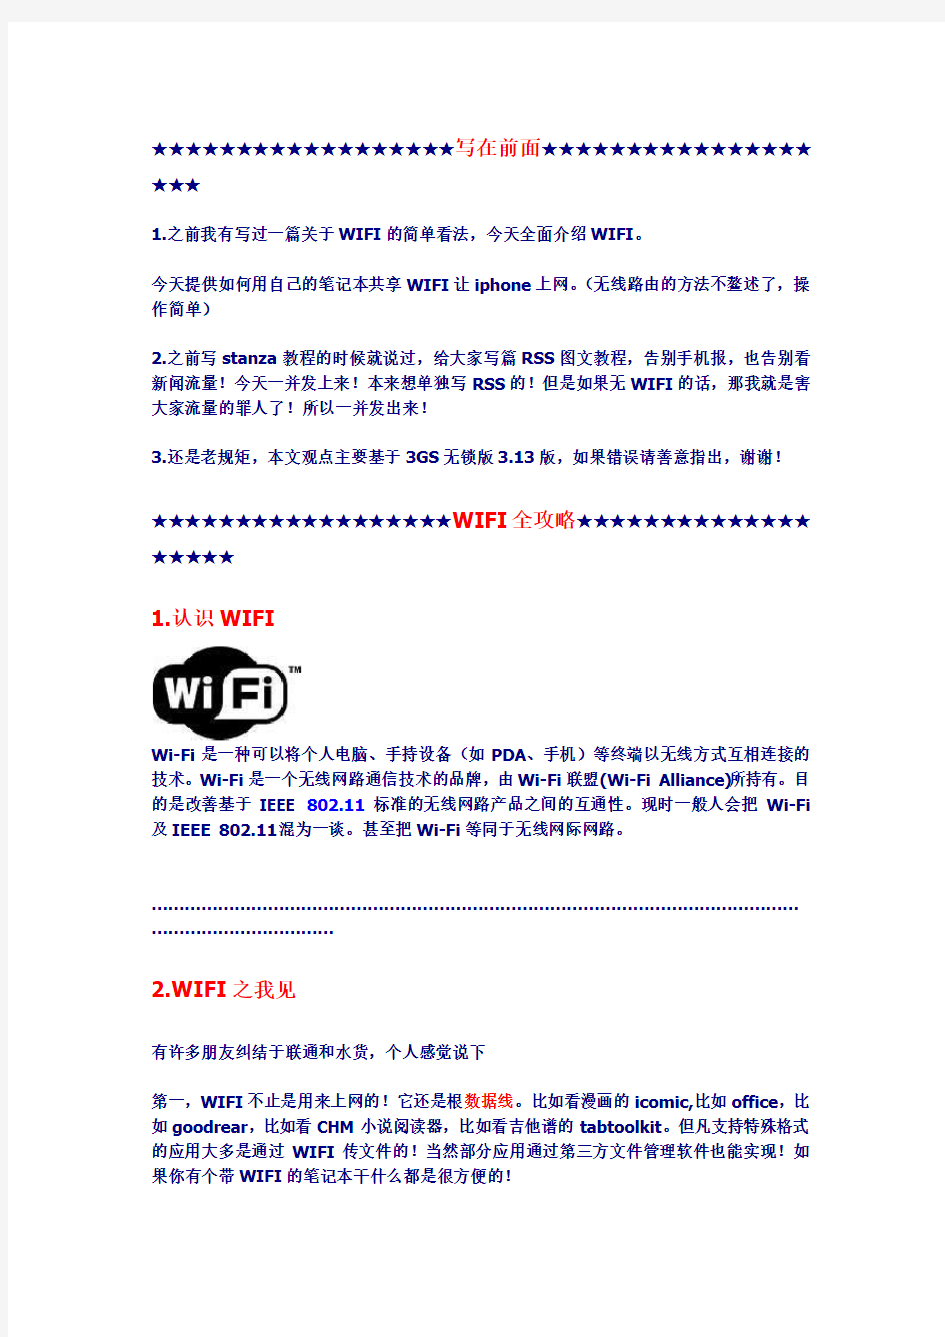 通过笔记本共享WIFI让手机上网